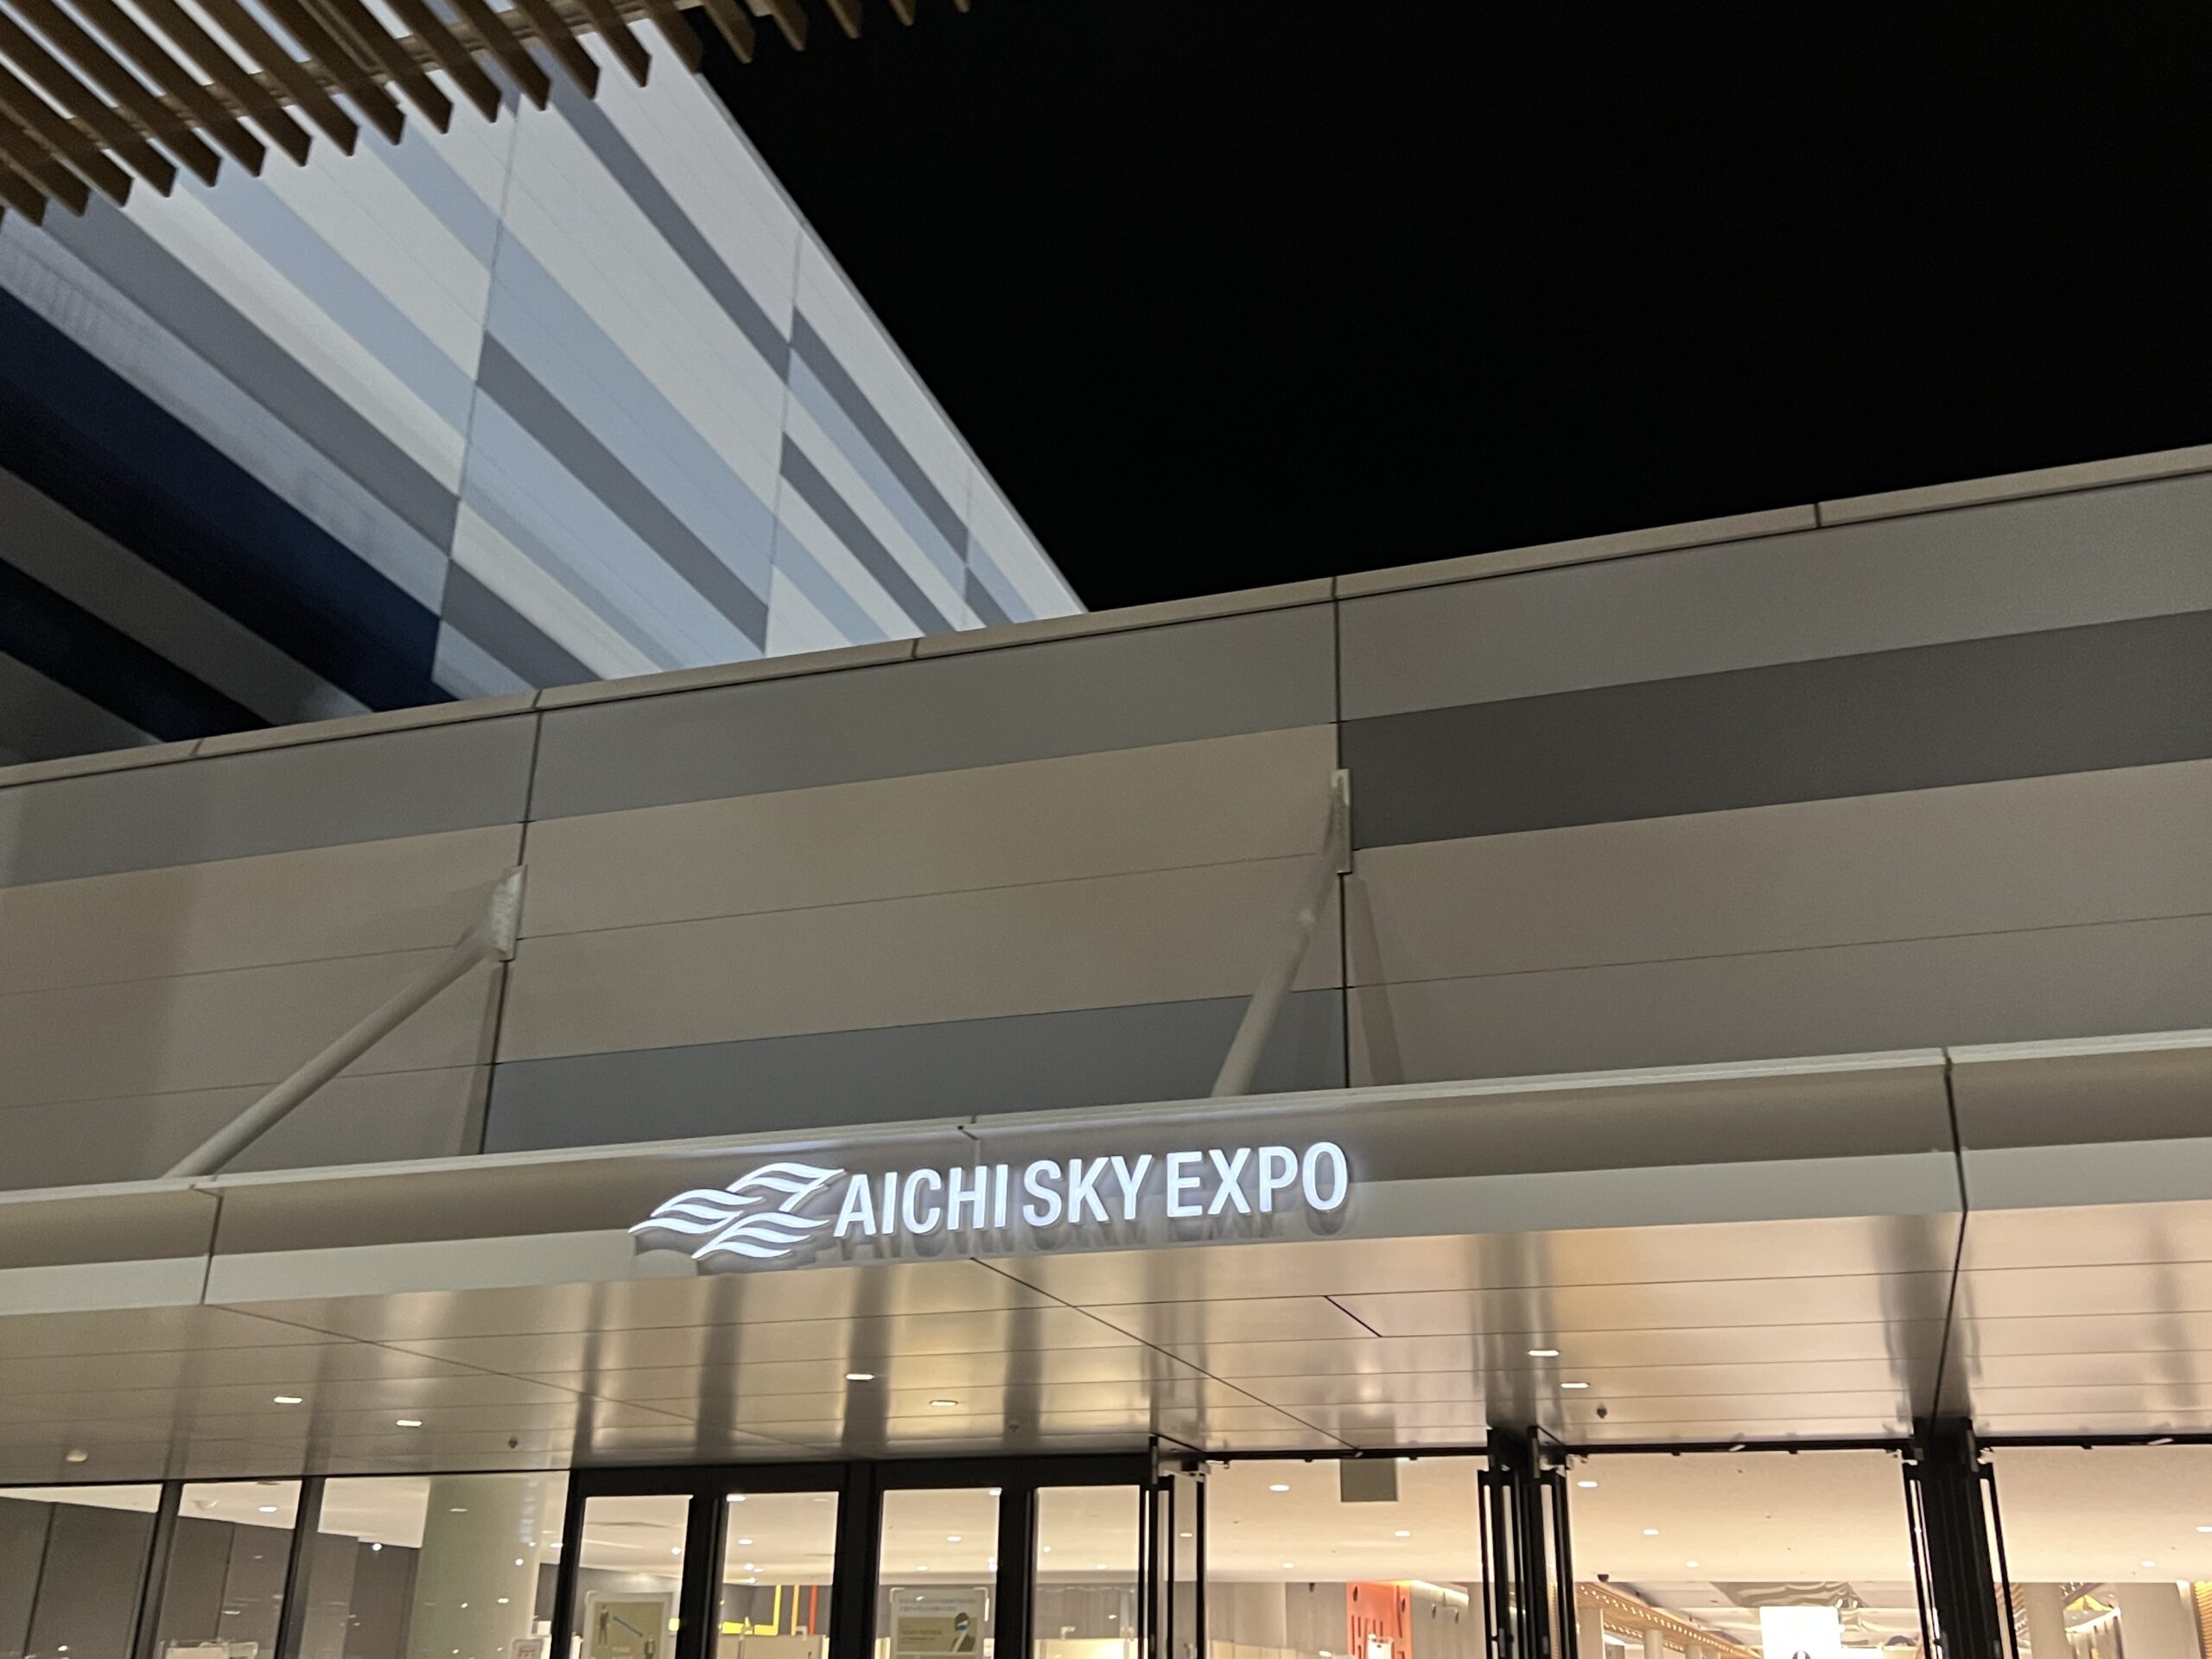 Aichi Sky Expo(愛知県国際展示場) ホールAの終演後の外観写真